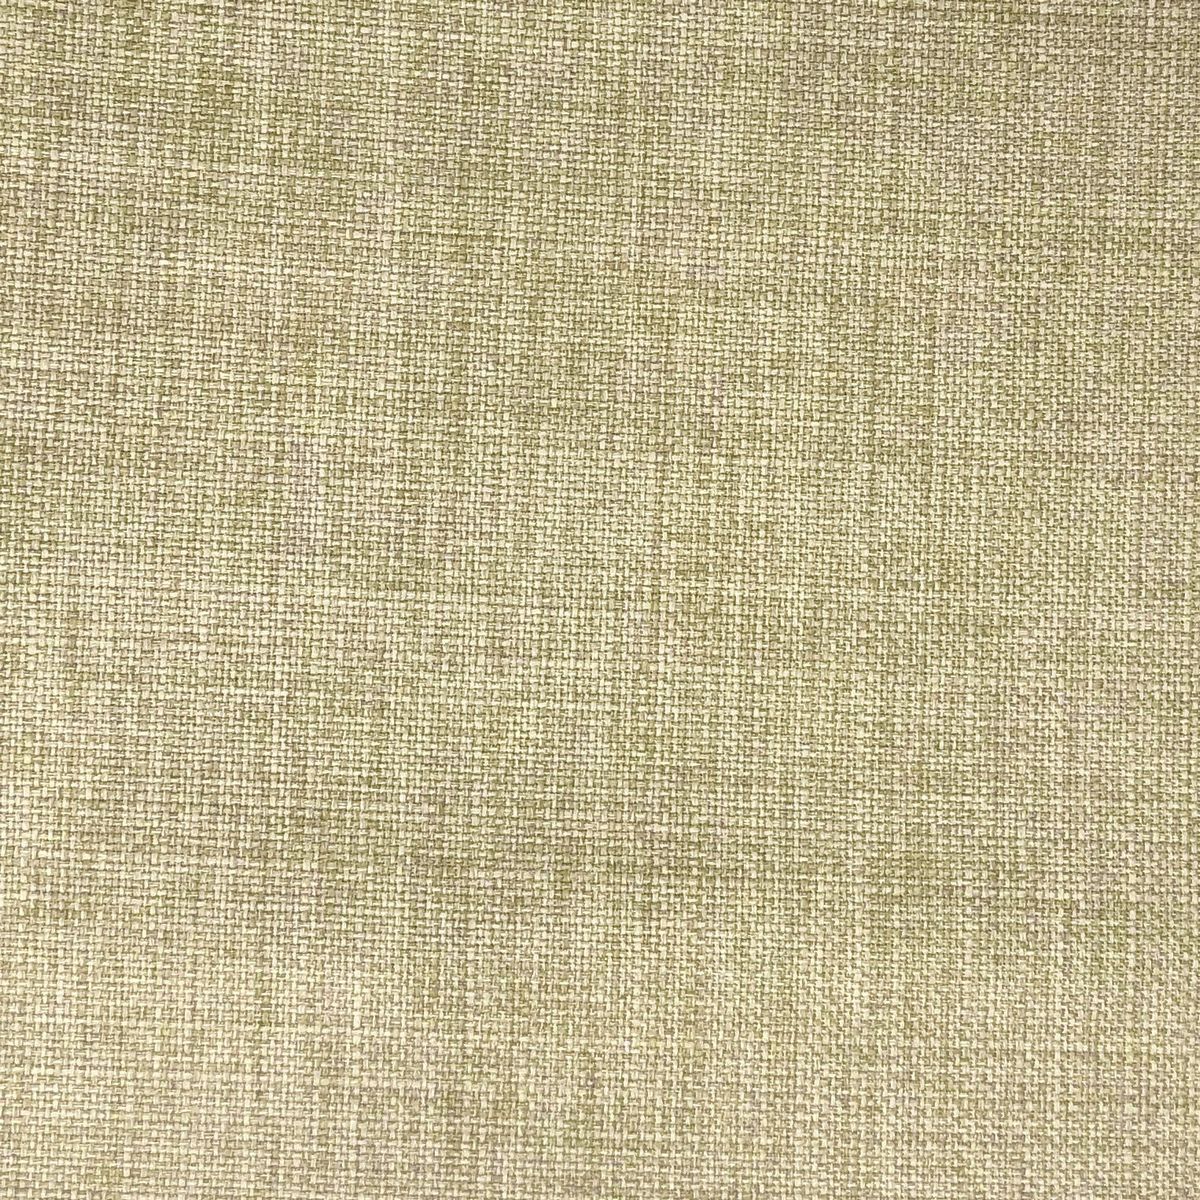 Linoso Hessian Fabric by Chatham Glyn